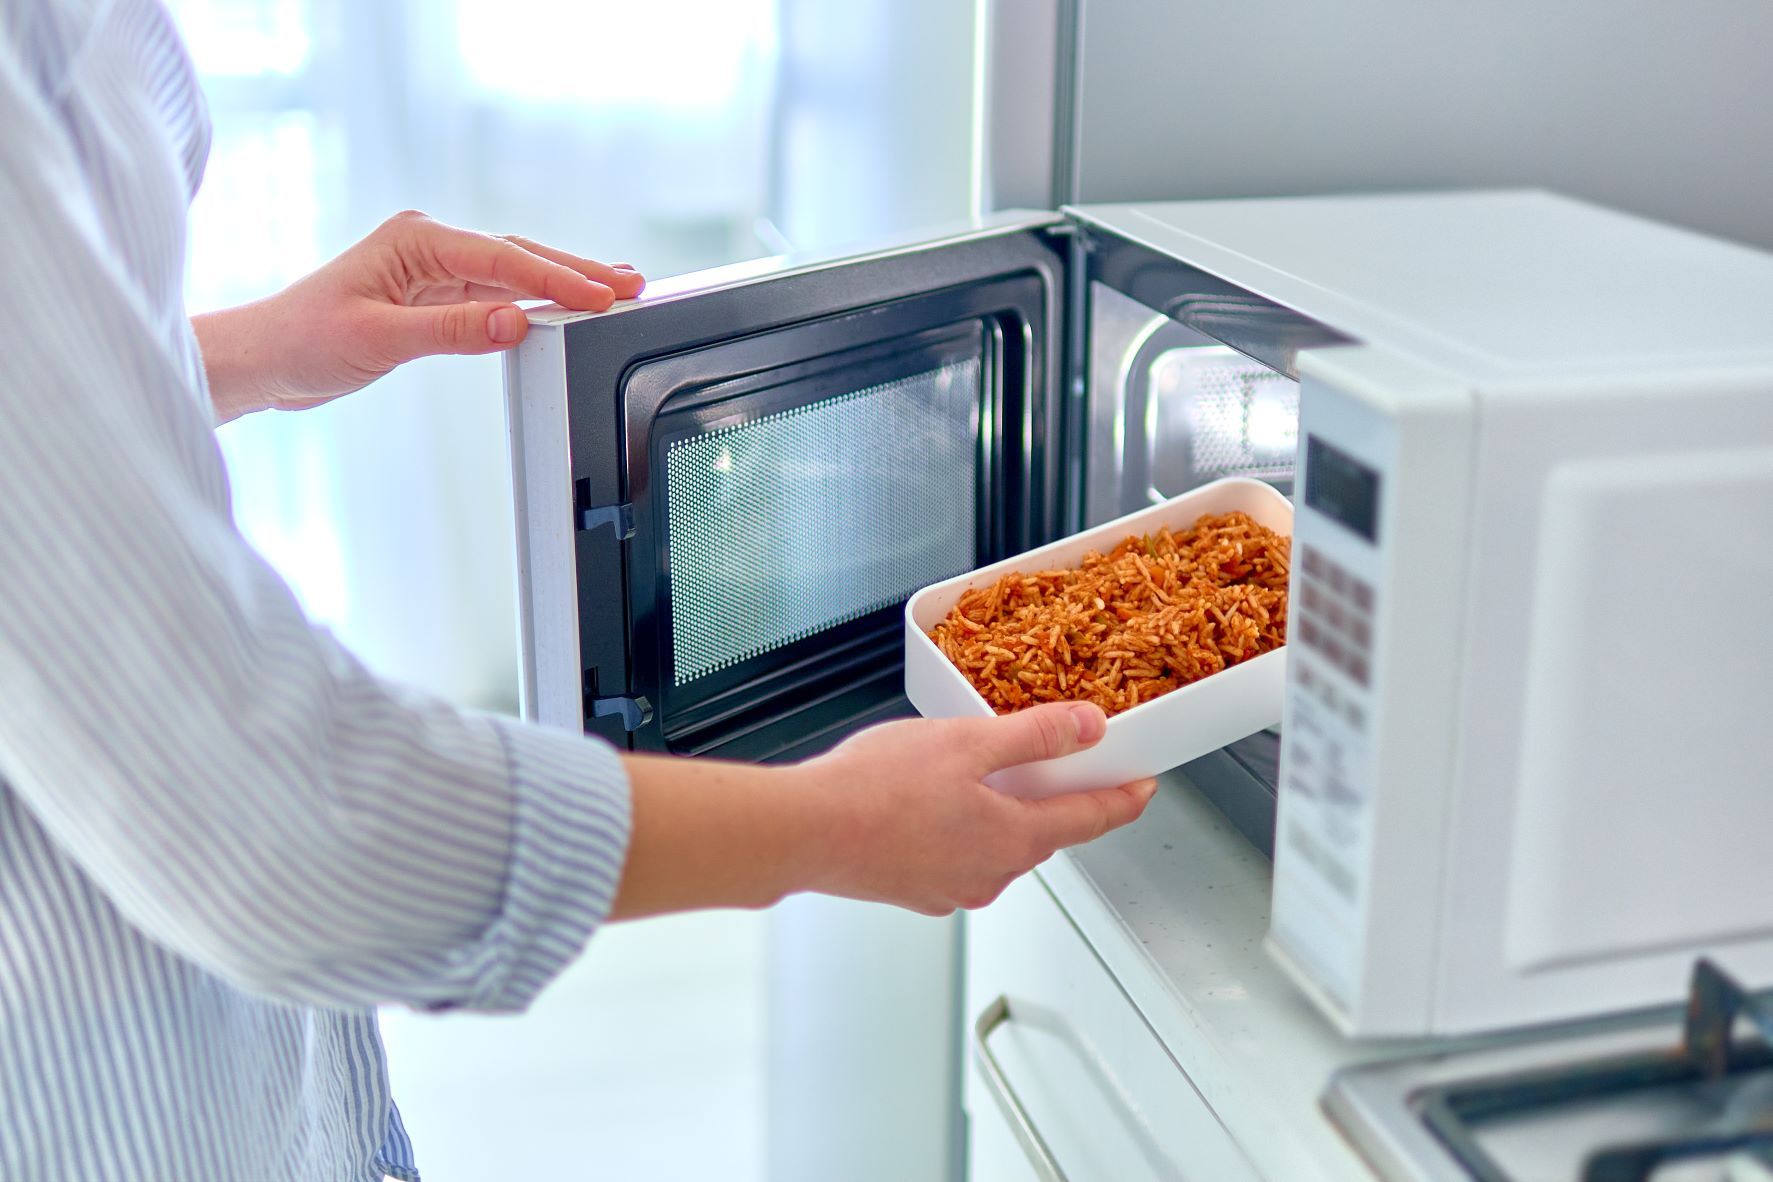 Come scegliere il forno a microonde giusto